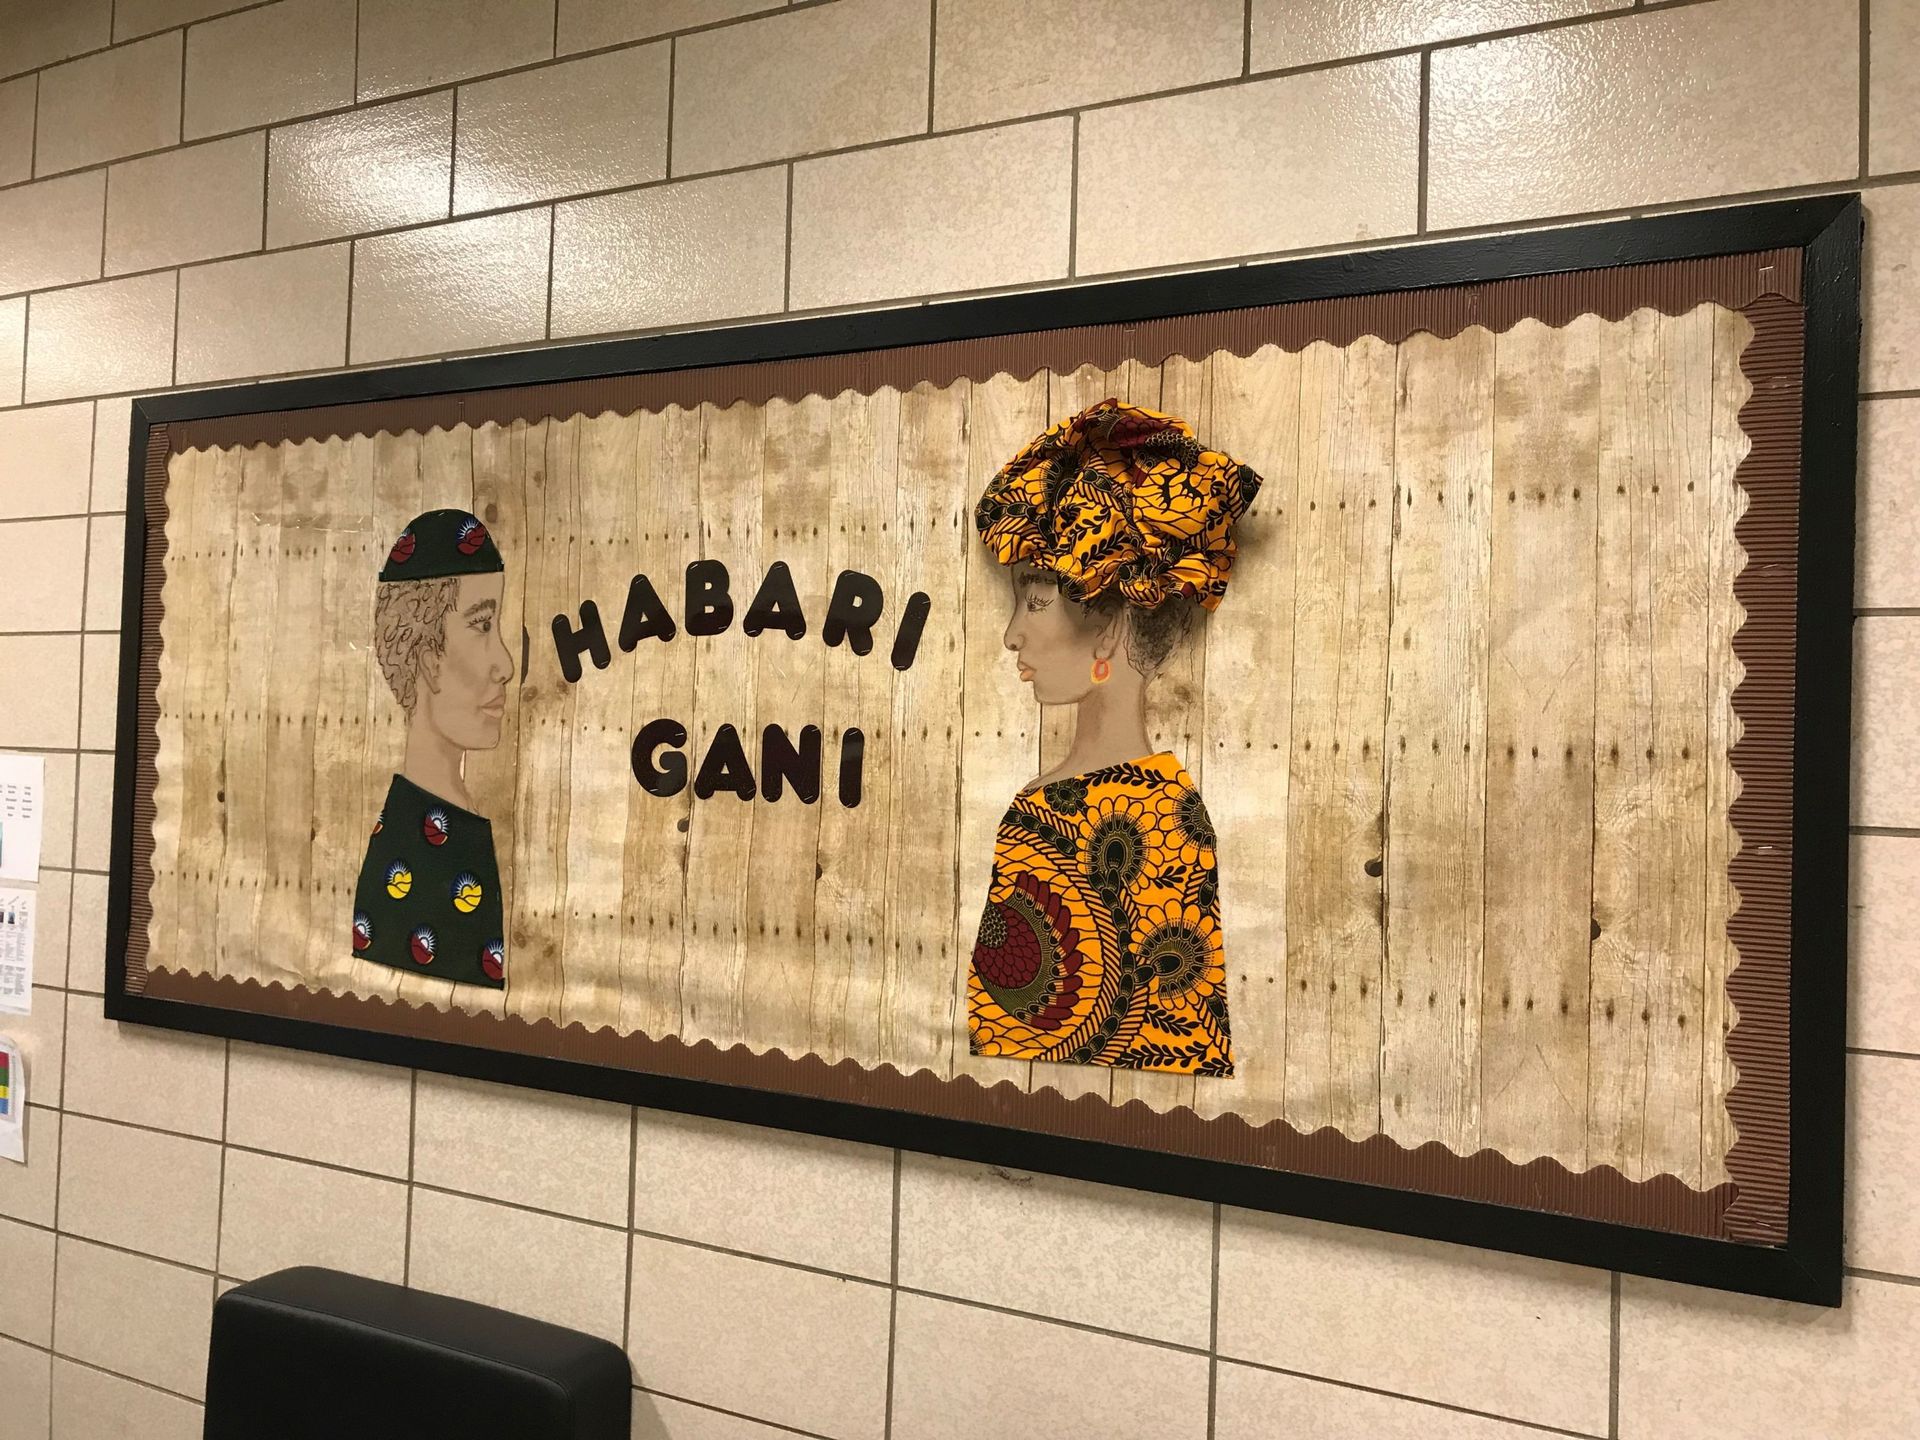 Sur les murs de l'école, du swahili. "Habari gani" ("Quelles nouvelles?")